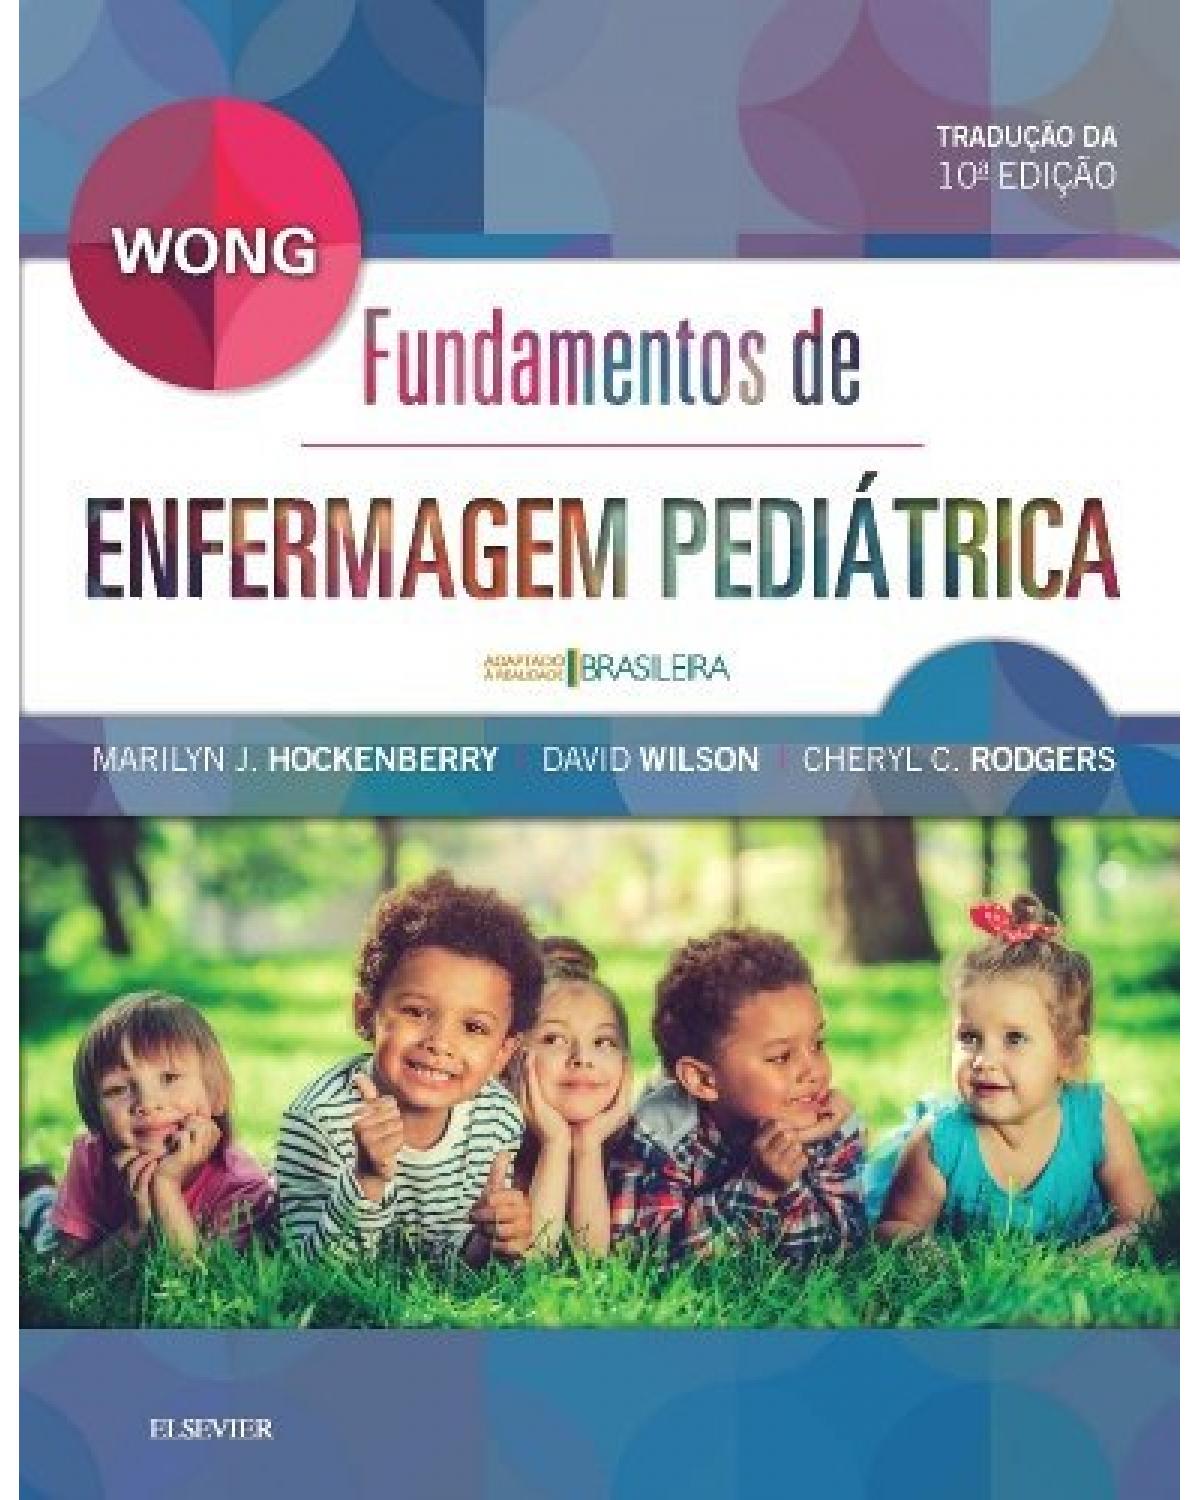 Wong - Fundamentos de enfermagem pediátrica - 10ª Edição | 2018